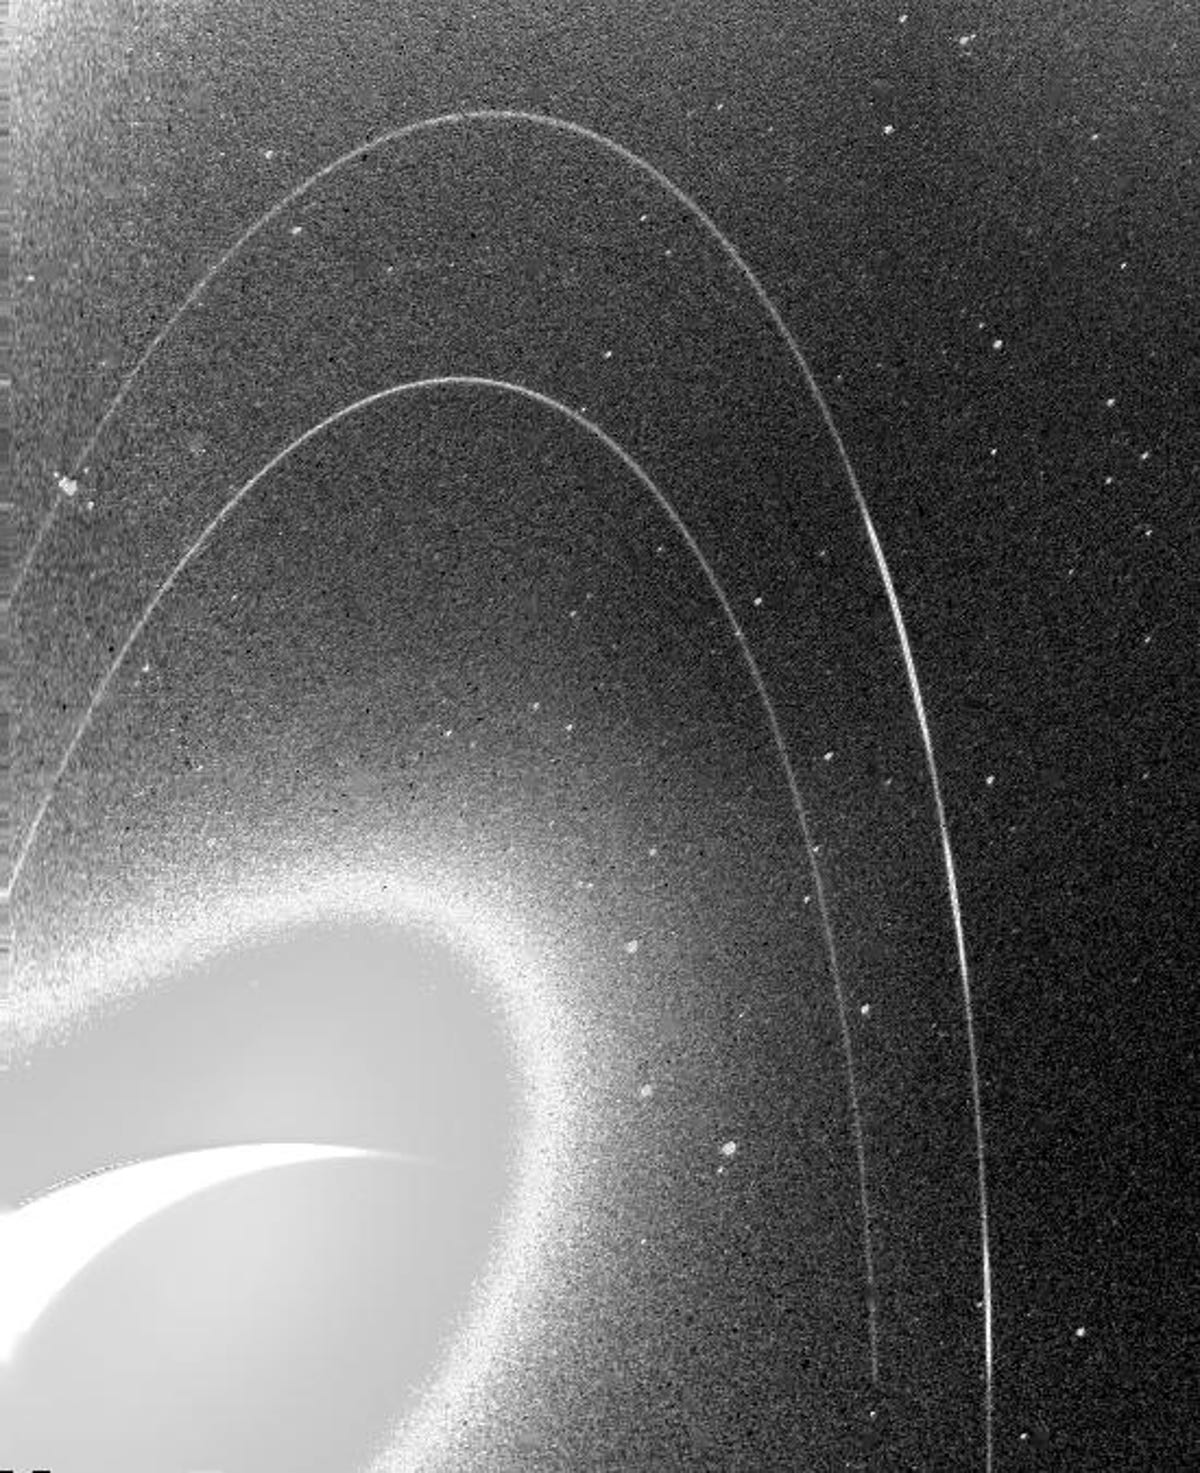 ざらざらした白黒の画像は、海王星のもろいリングを示しています。